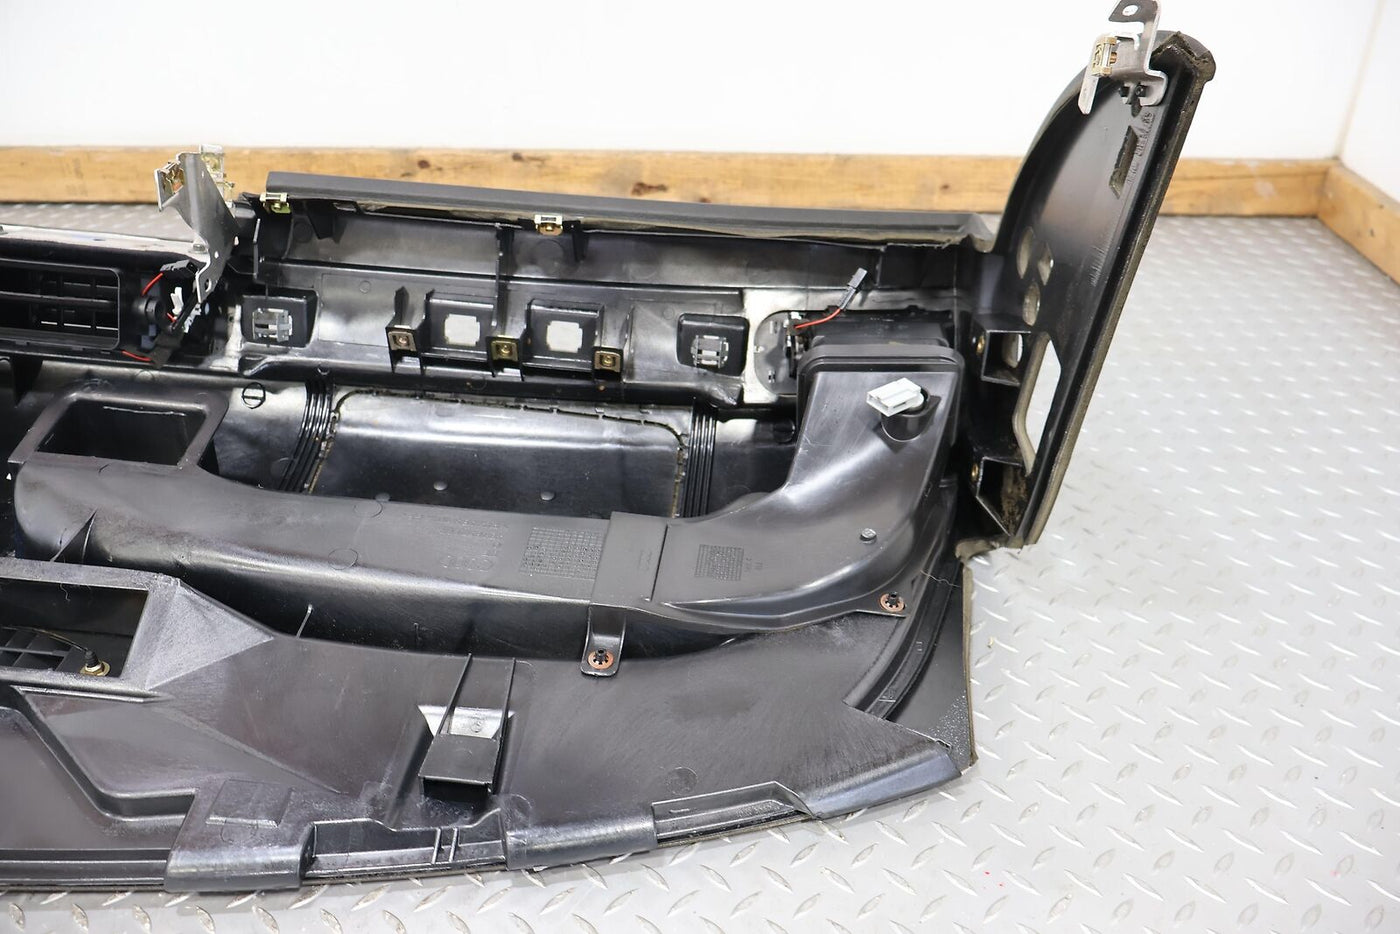 03-04 Audi RS6 Interior Bare Dash Dasboard Panel (Black) Includes Dash Vents